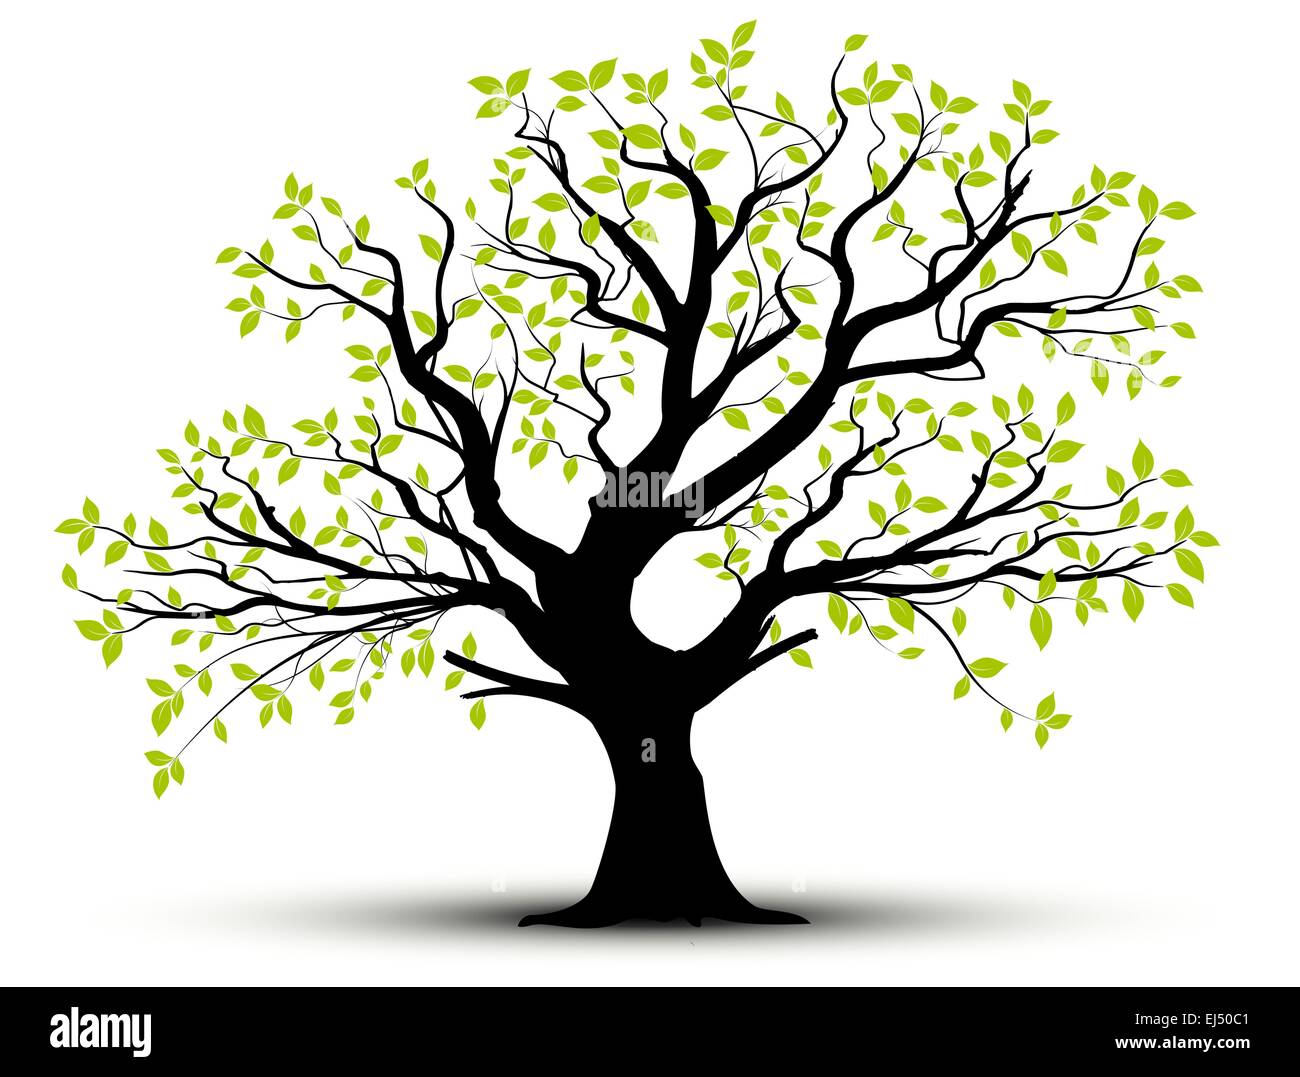 Vektor Baum Im Fruhling Grunes Laub Stock Vektorgrafik Alamy